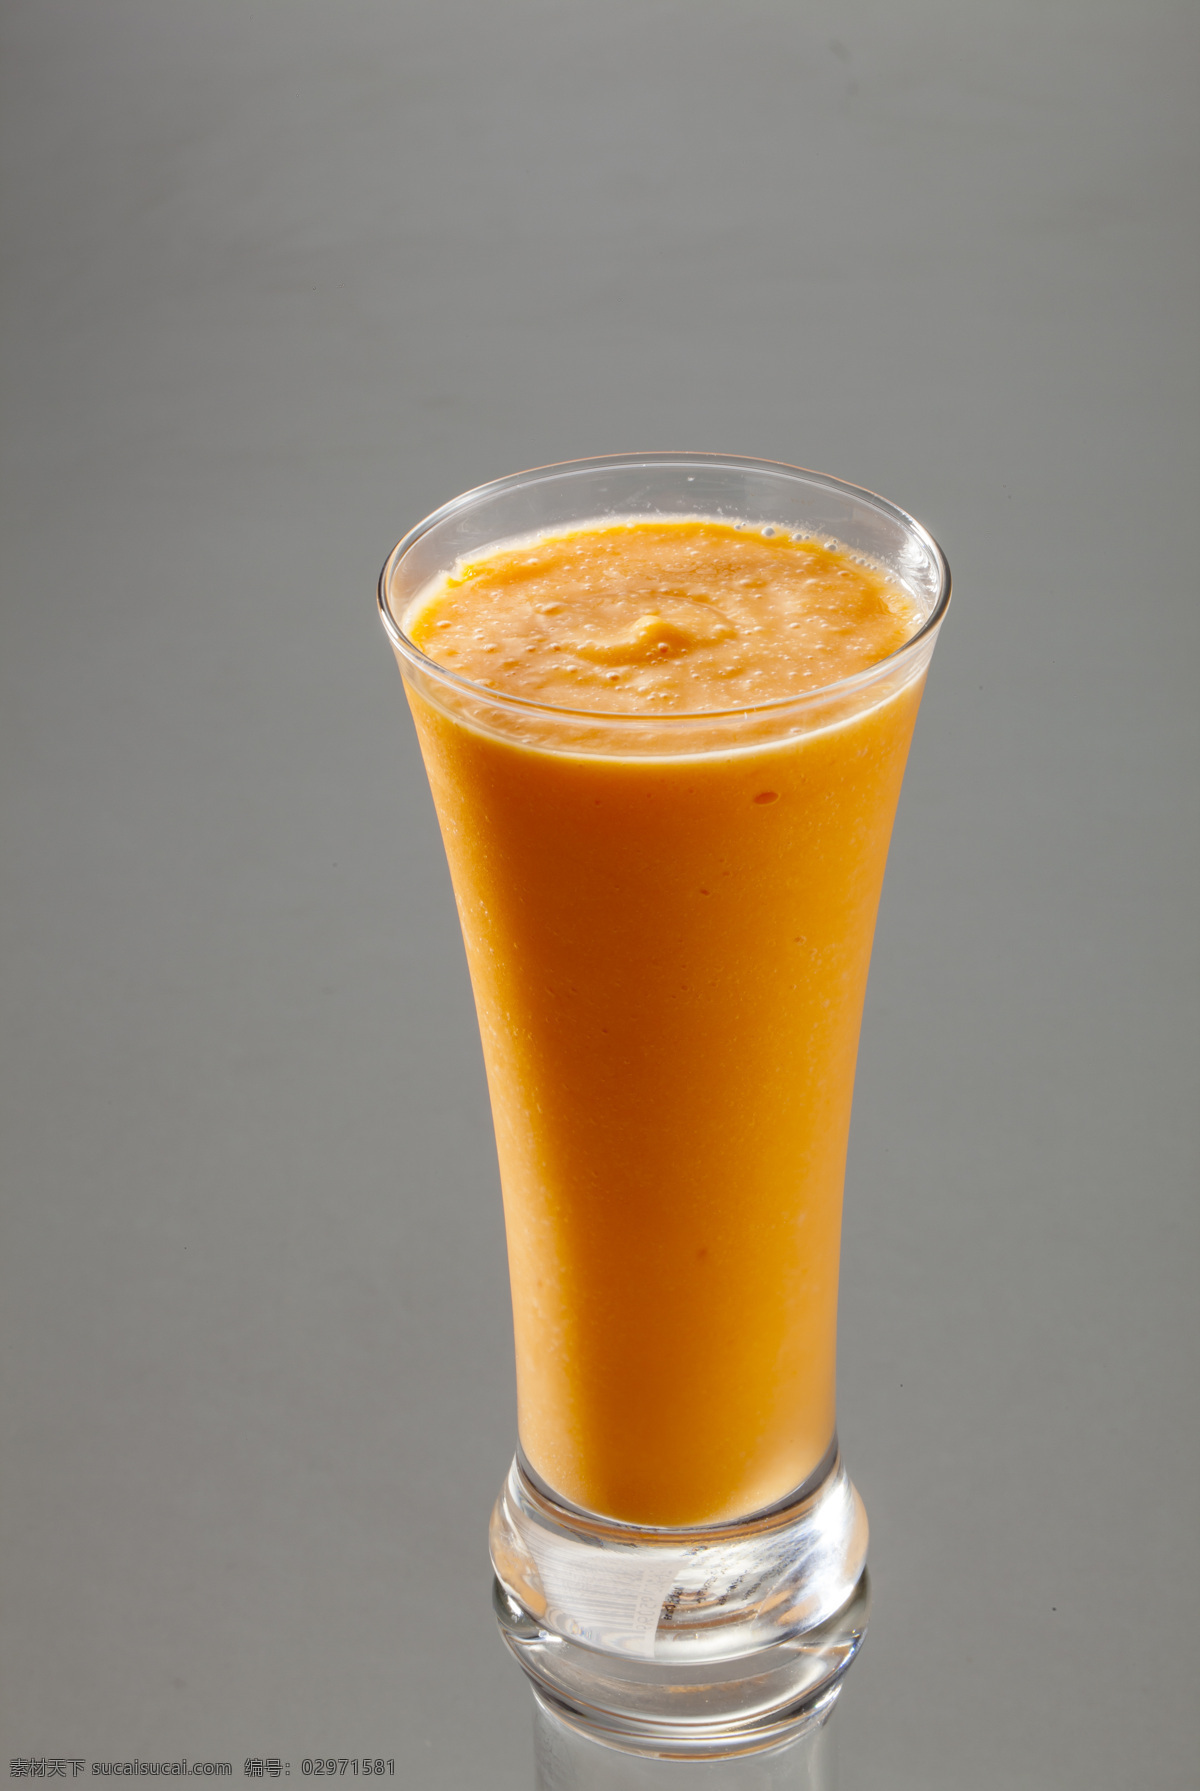 芒果汁 芒果 饮料 水果 甜品 饮品 饮料酒水 摄影拍照 餐饮美食